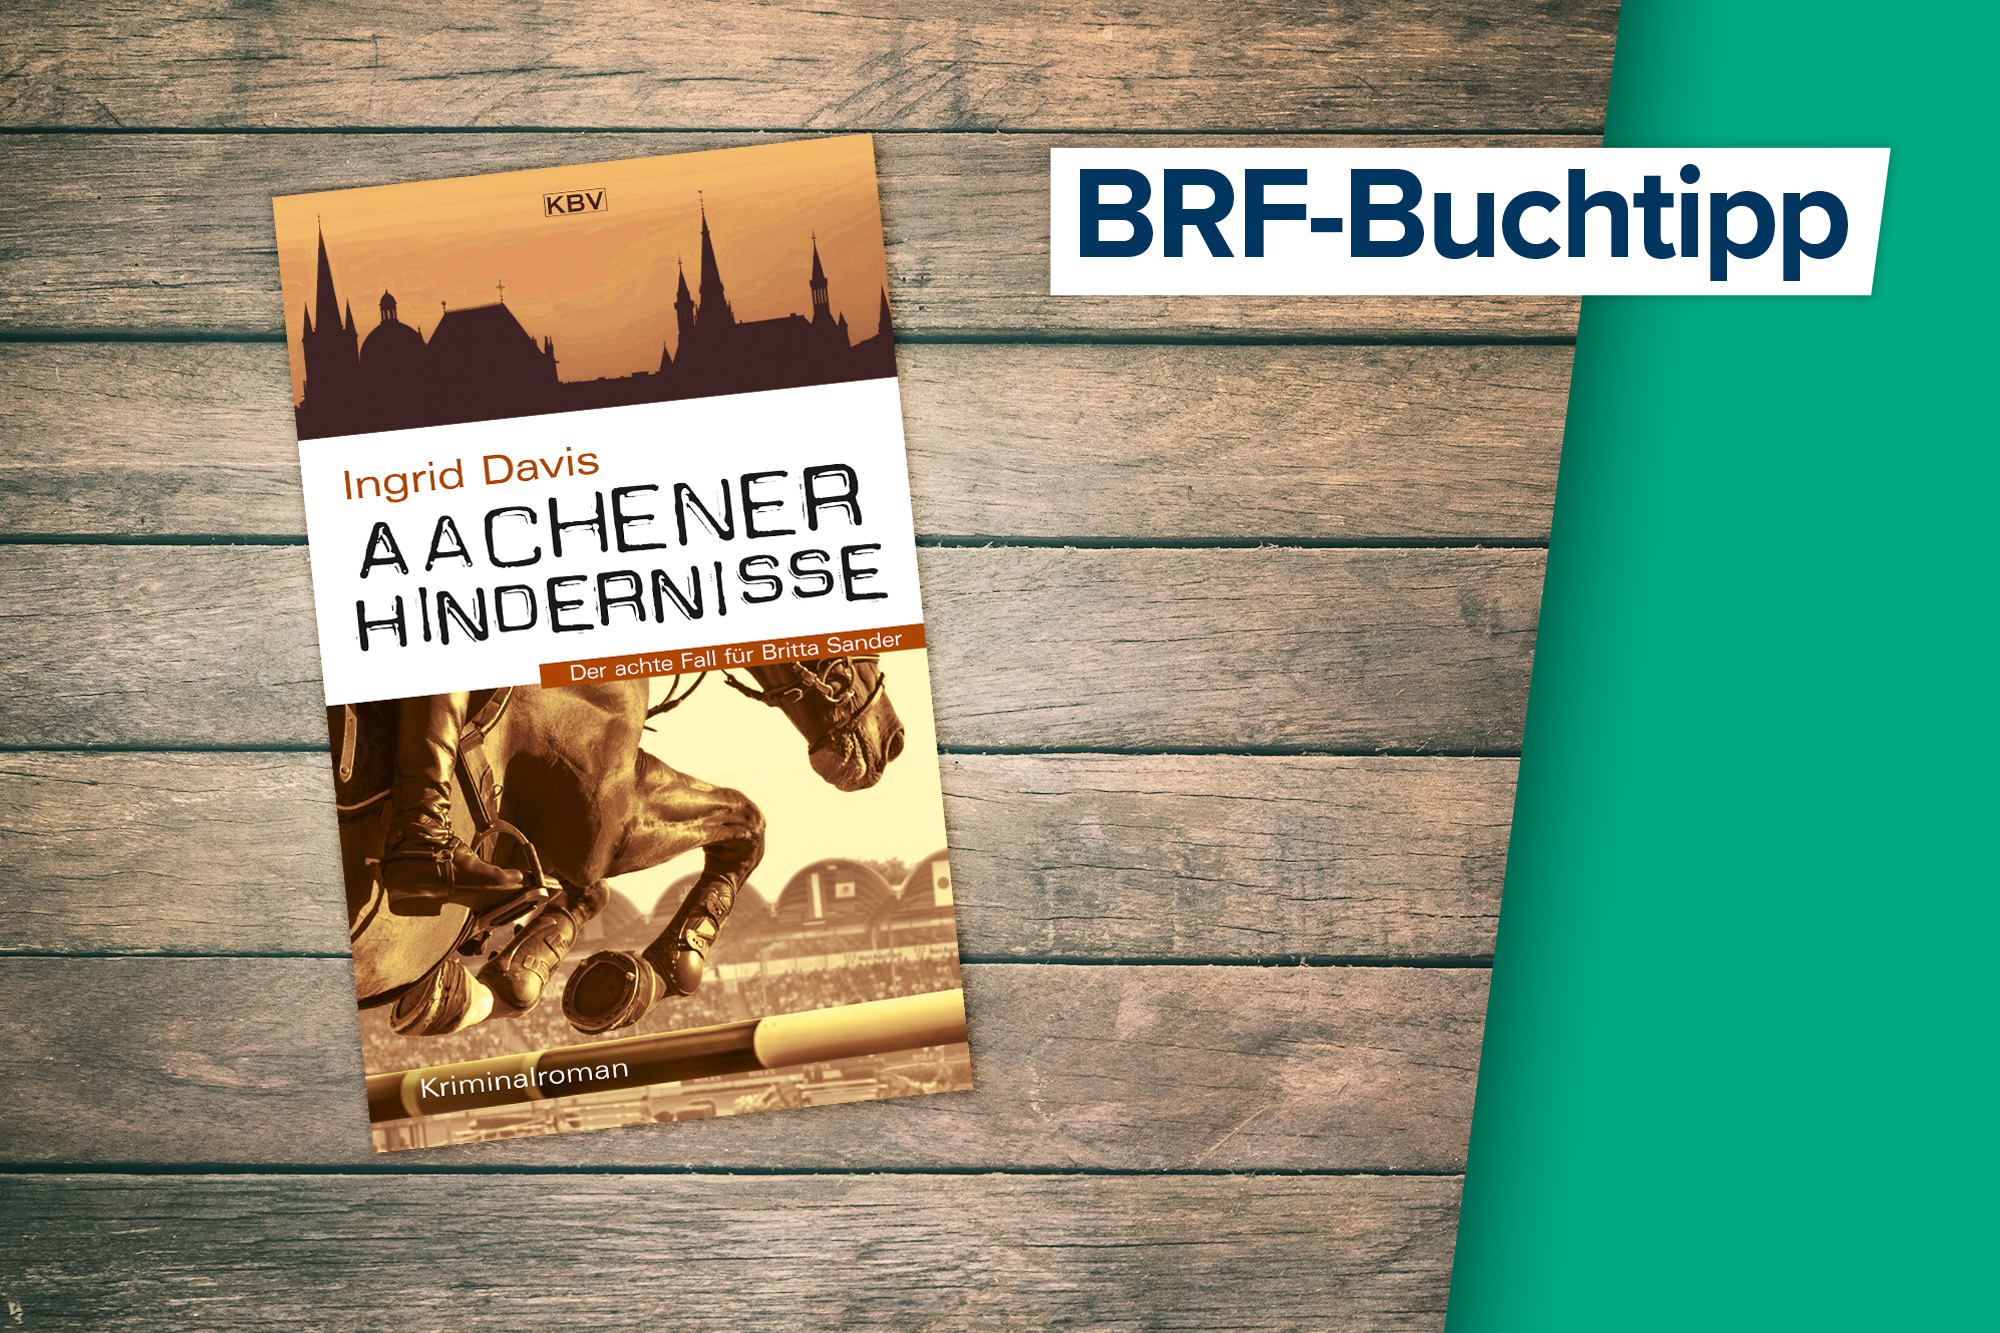 Der Buchtipp auf BRF1: "Aachener Hindernisse" von Ingrid Davis (KBV Verlag)